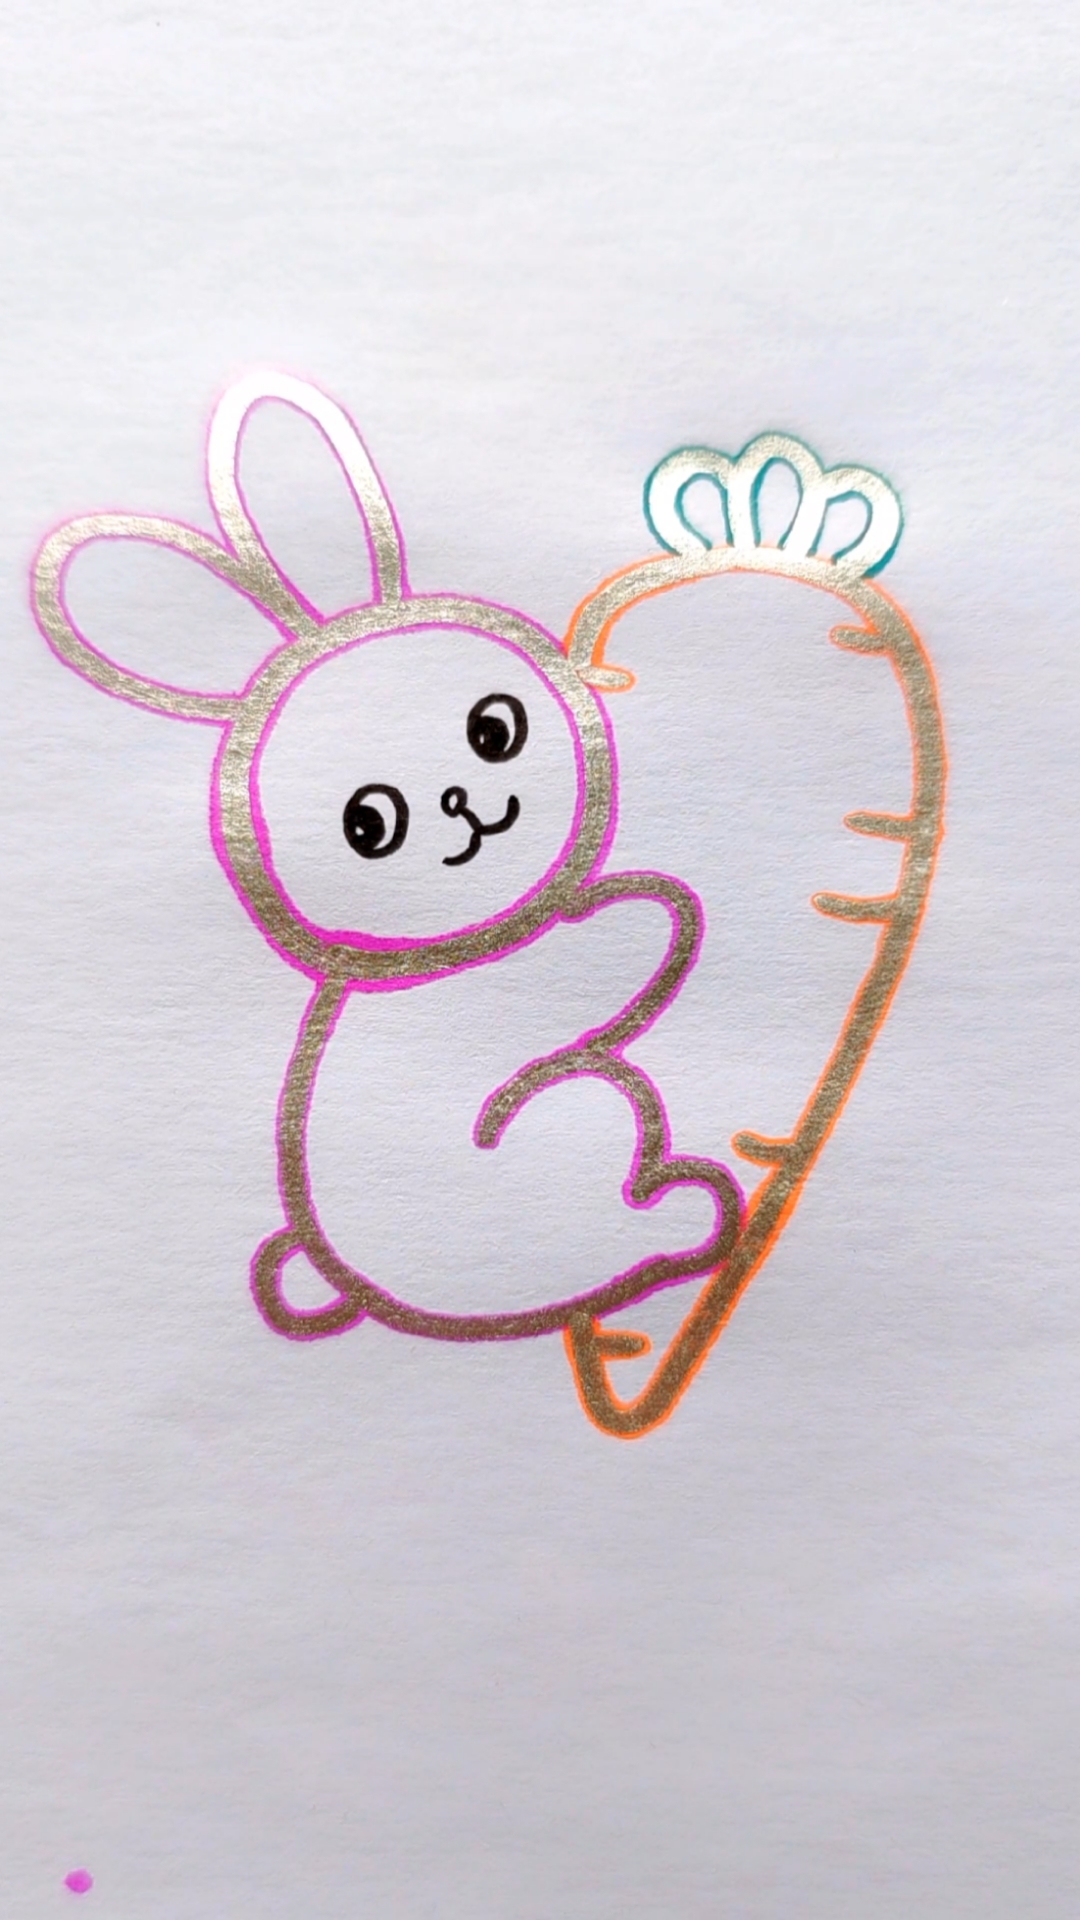 小兔子简笔画 胡萝卜图片